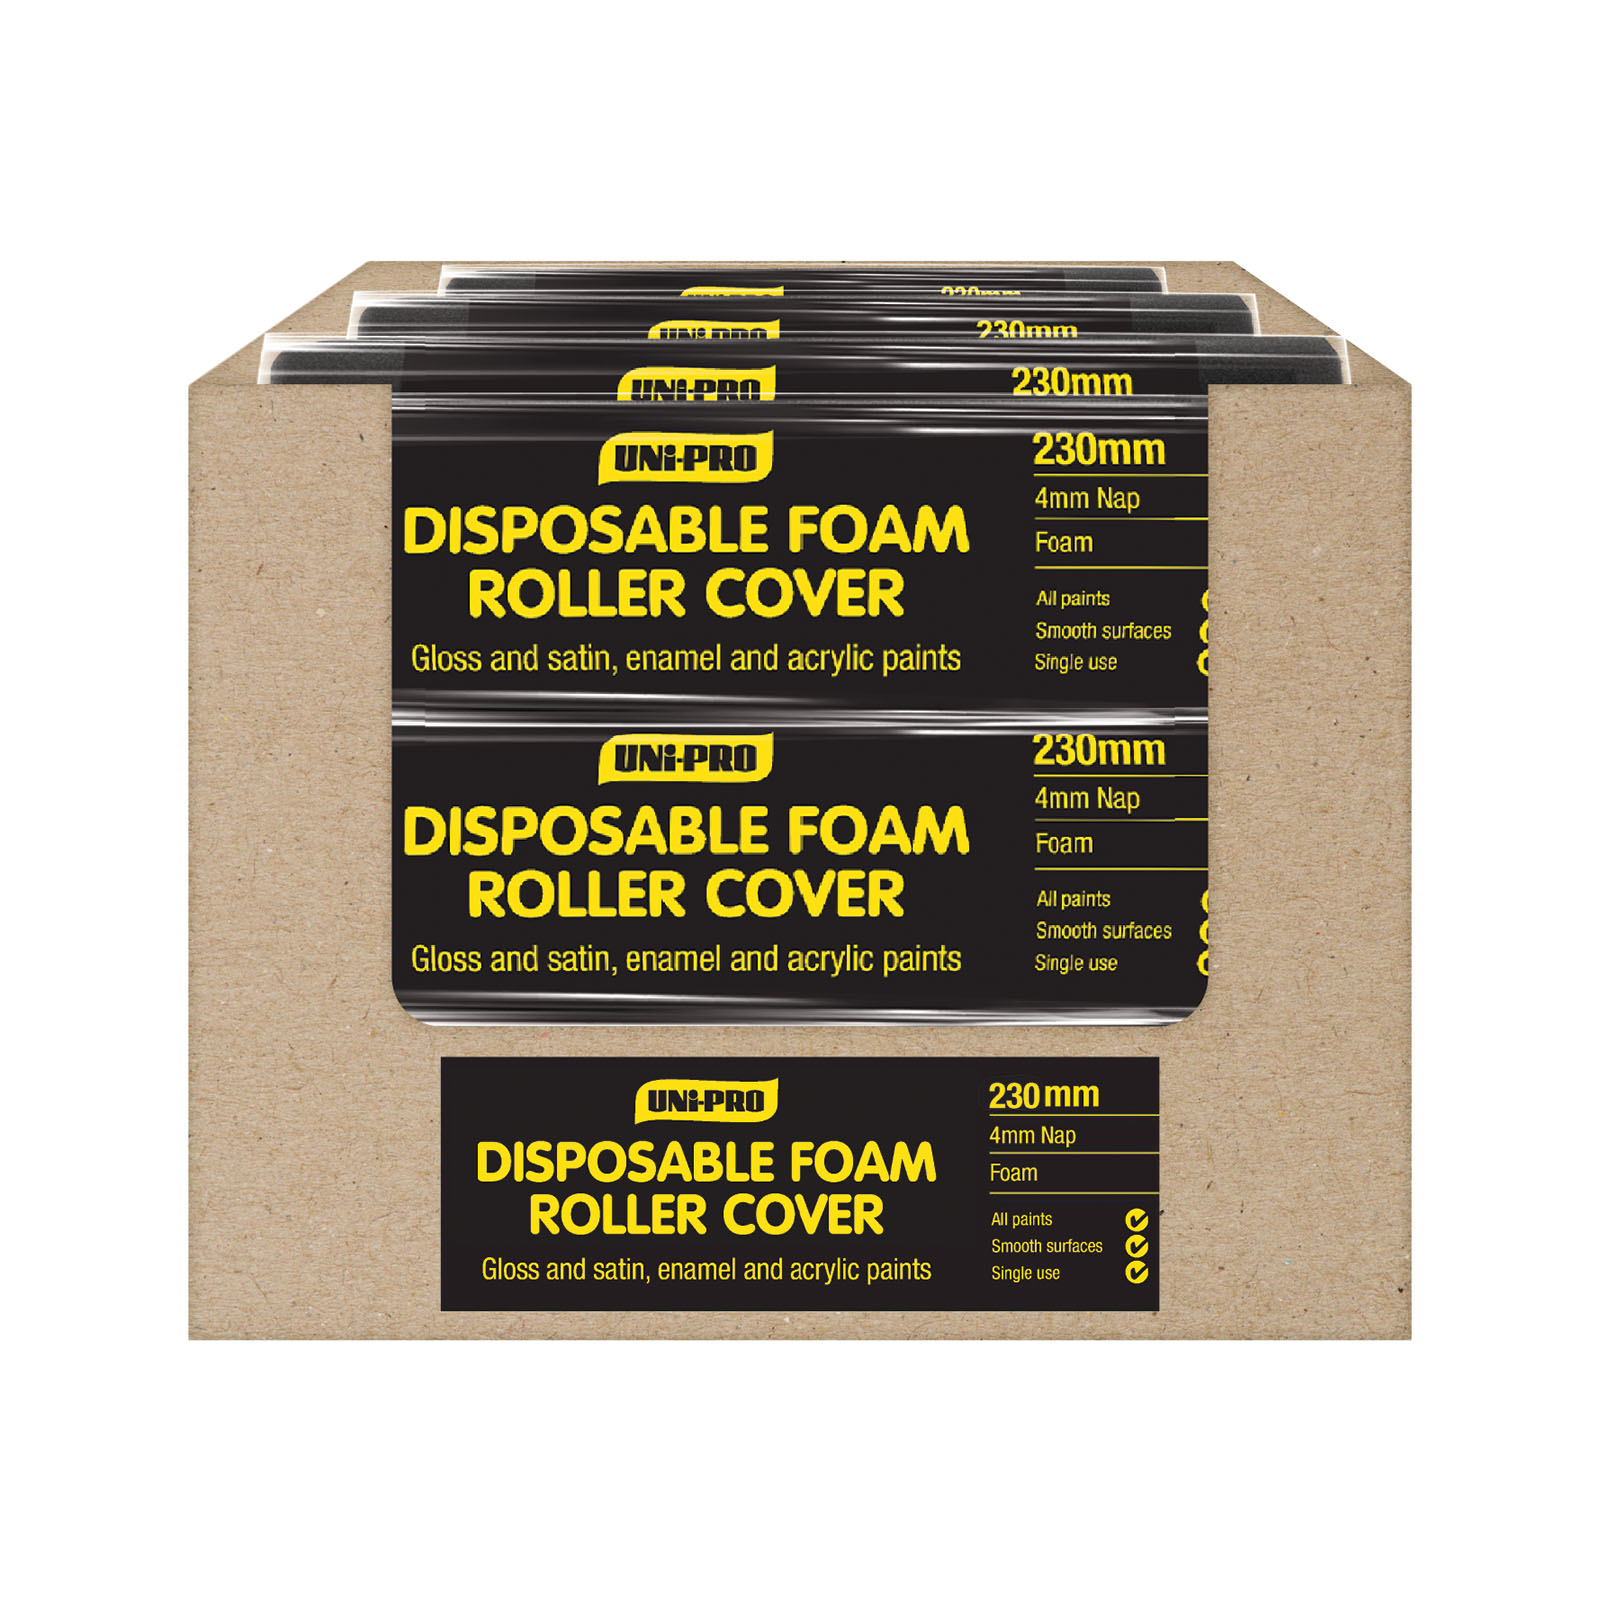 UNi-PRO Disposable Foam Roller Covers Range 5mm Nap